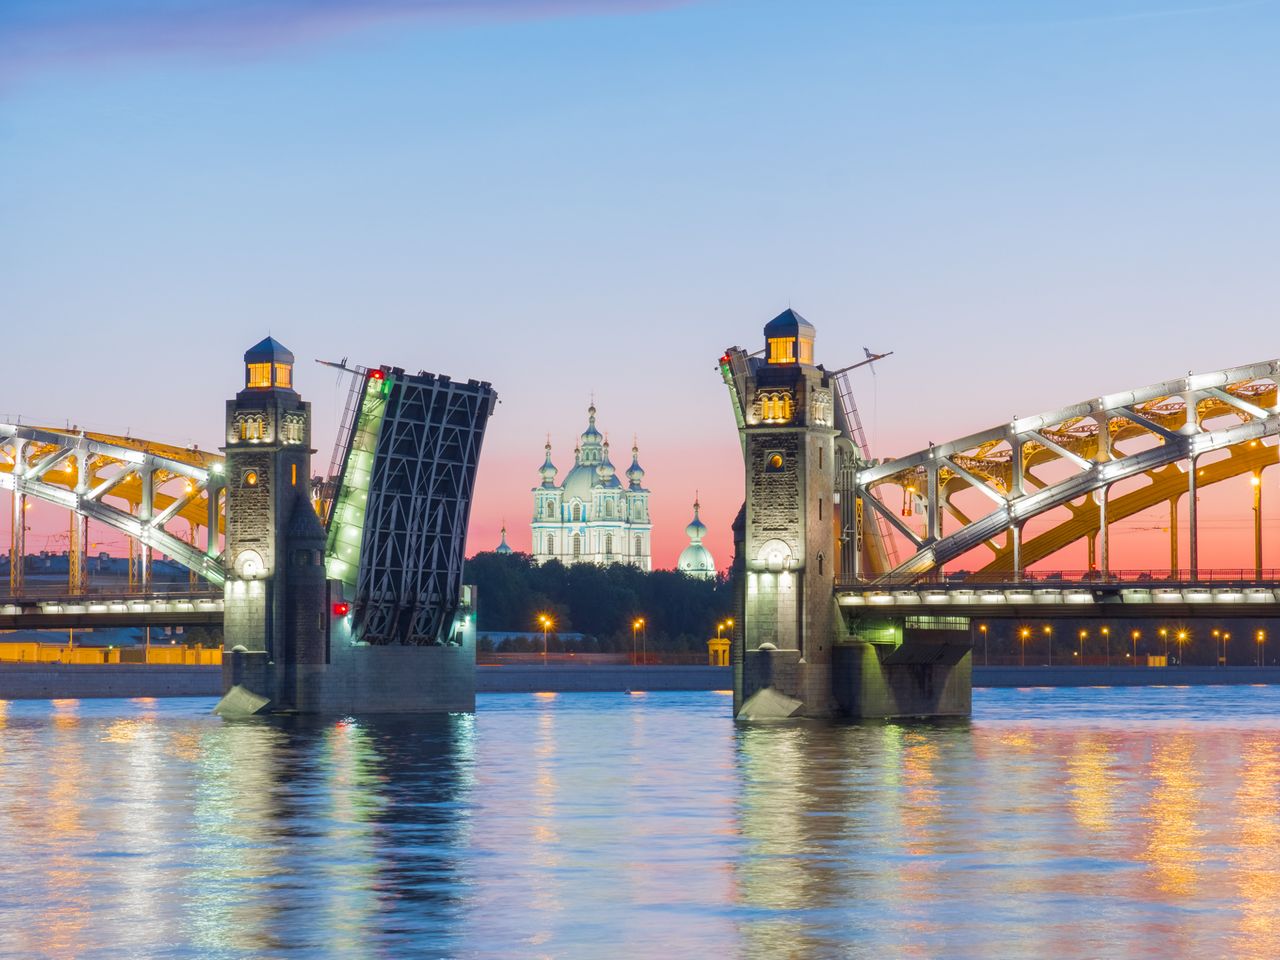 Разведение мостов – ночная поездка по Петербургу | Цена 9100₽, отзывы, описание экскурсии